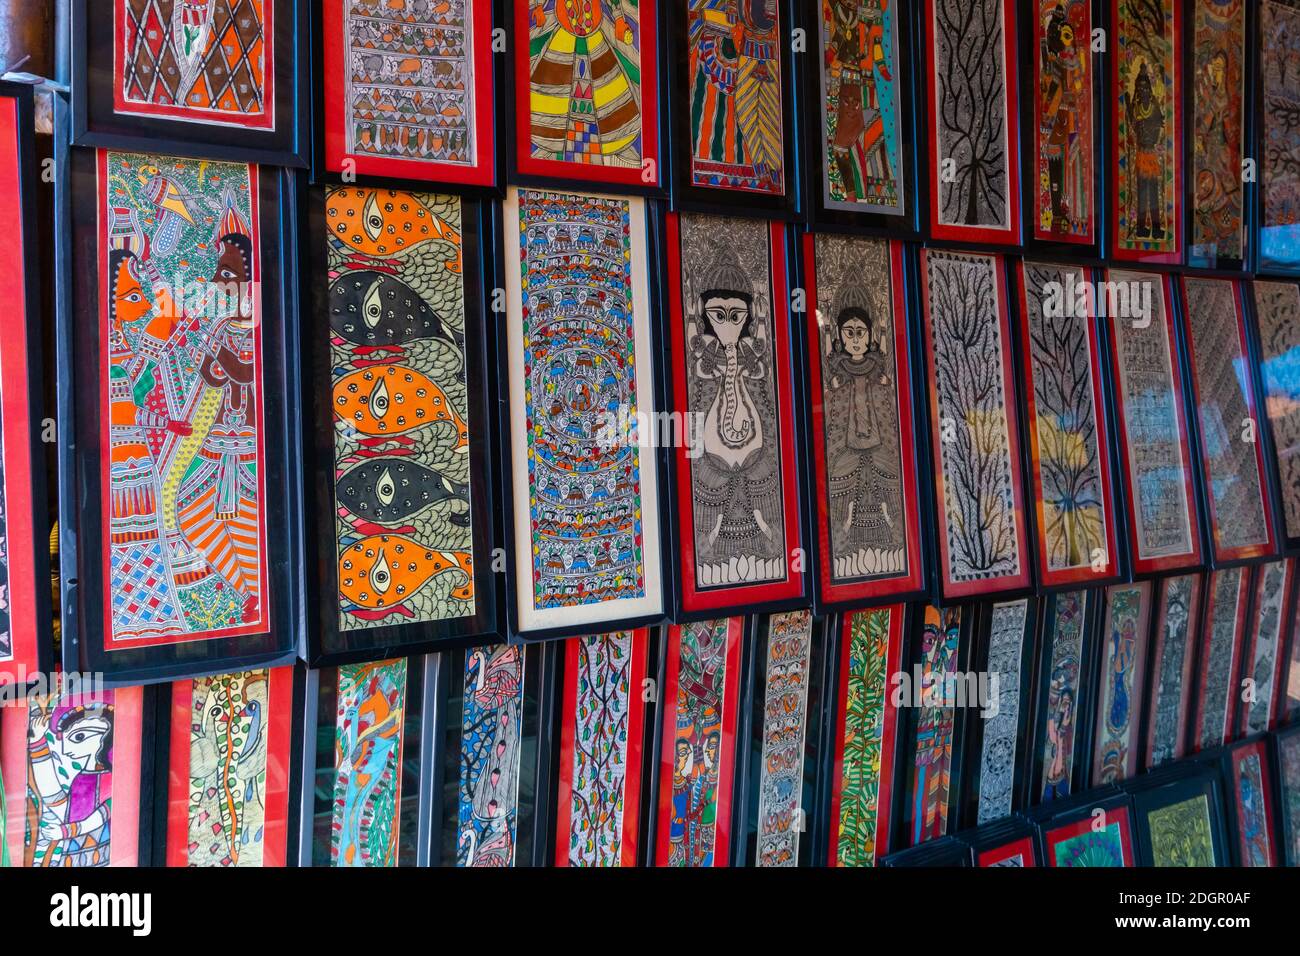 Dipinti murali di Bihar, India chiamato Madhubani in vendita in un piccolo stand nella mostra d'arte a Shilparamam, Hyderabad, Telangana, India Foto Stock